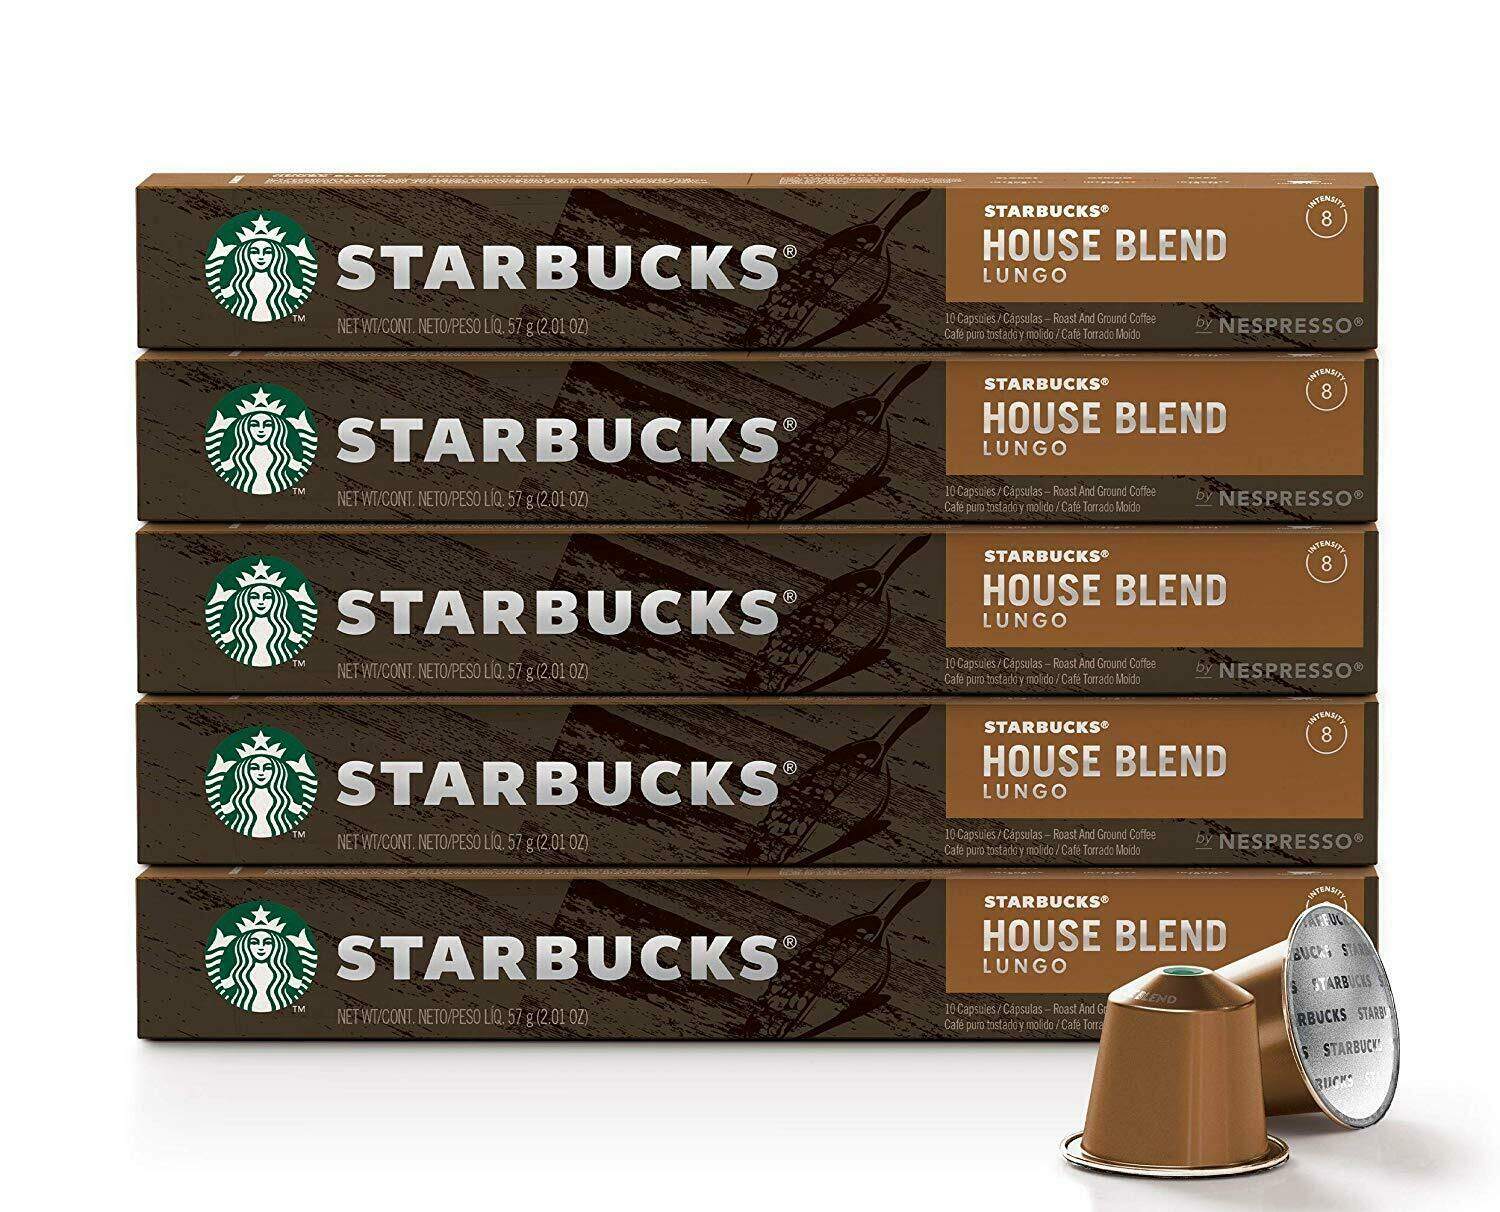 [ออกใบกำกับภาษีได้] Starbucks Capsule Nespresso กาแฟแคปซูล สตาร์บัคส์ ใช้กับเครื่องชงกาแฟ Nespresso, Xiaomi ของแท้ ส่งเร็ว  flavour House Blend